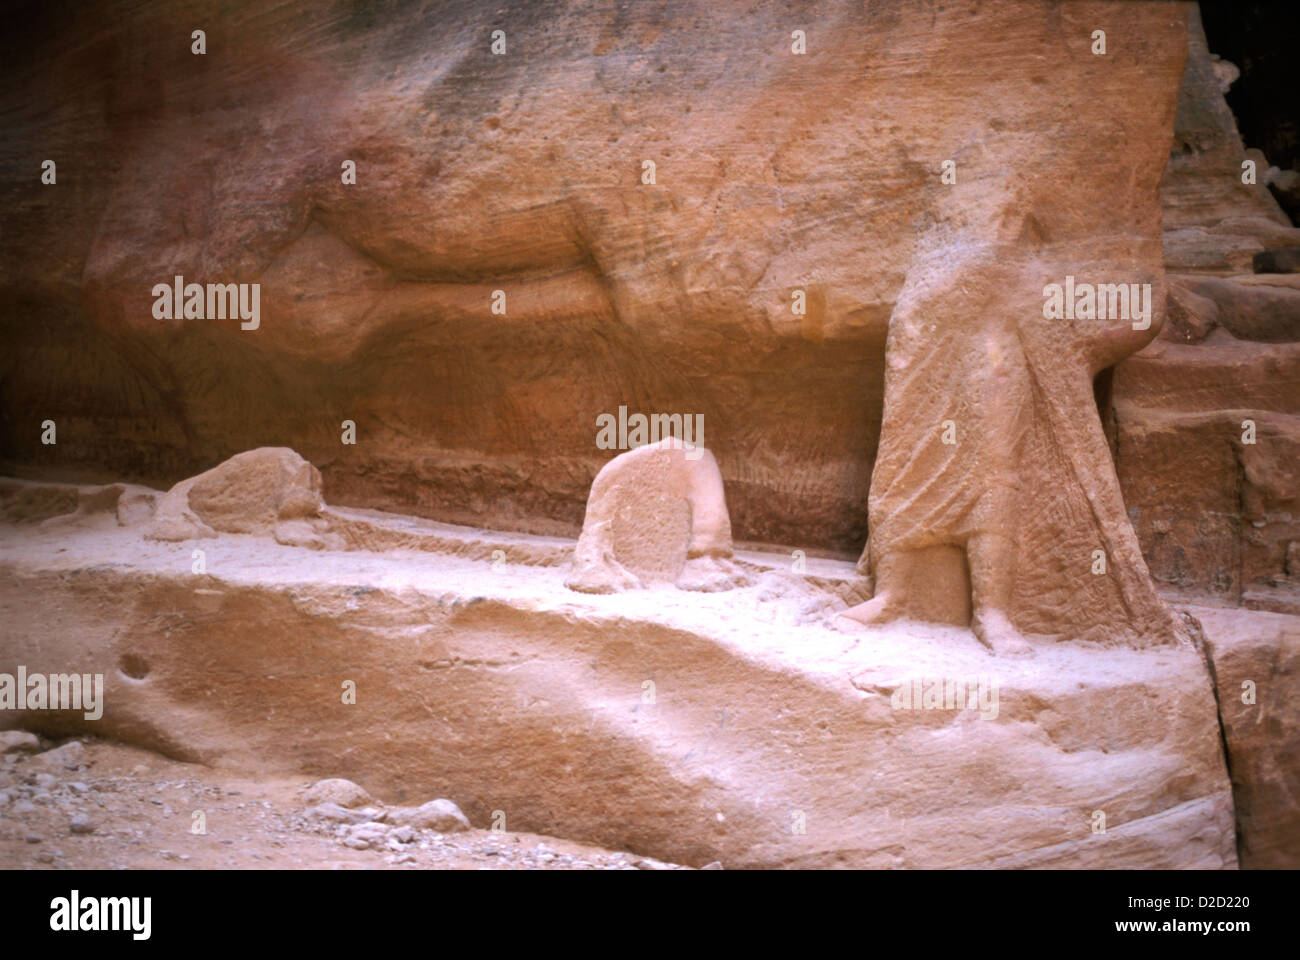 La Jordanie, Pétra, Siq Gorge. Fragment de sculpture représentant un homme conduisant son chameau, découvert en 1997. Banque D'Images